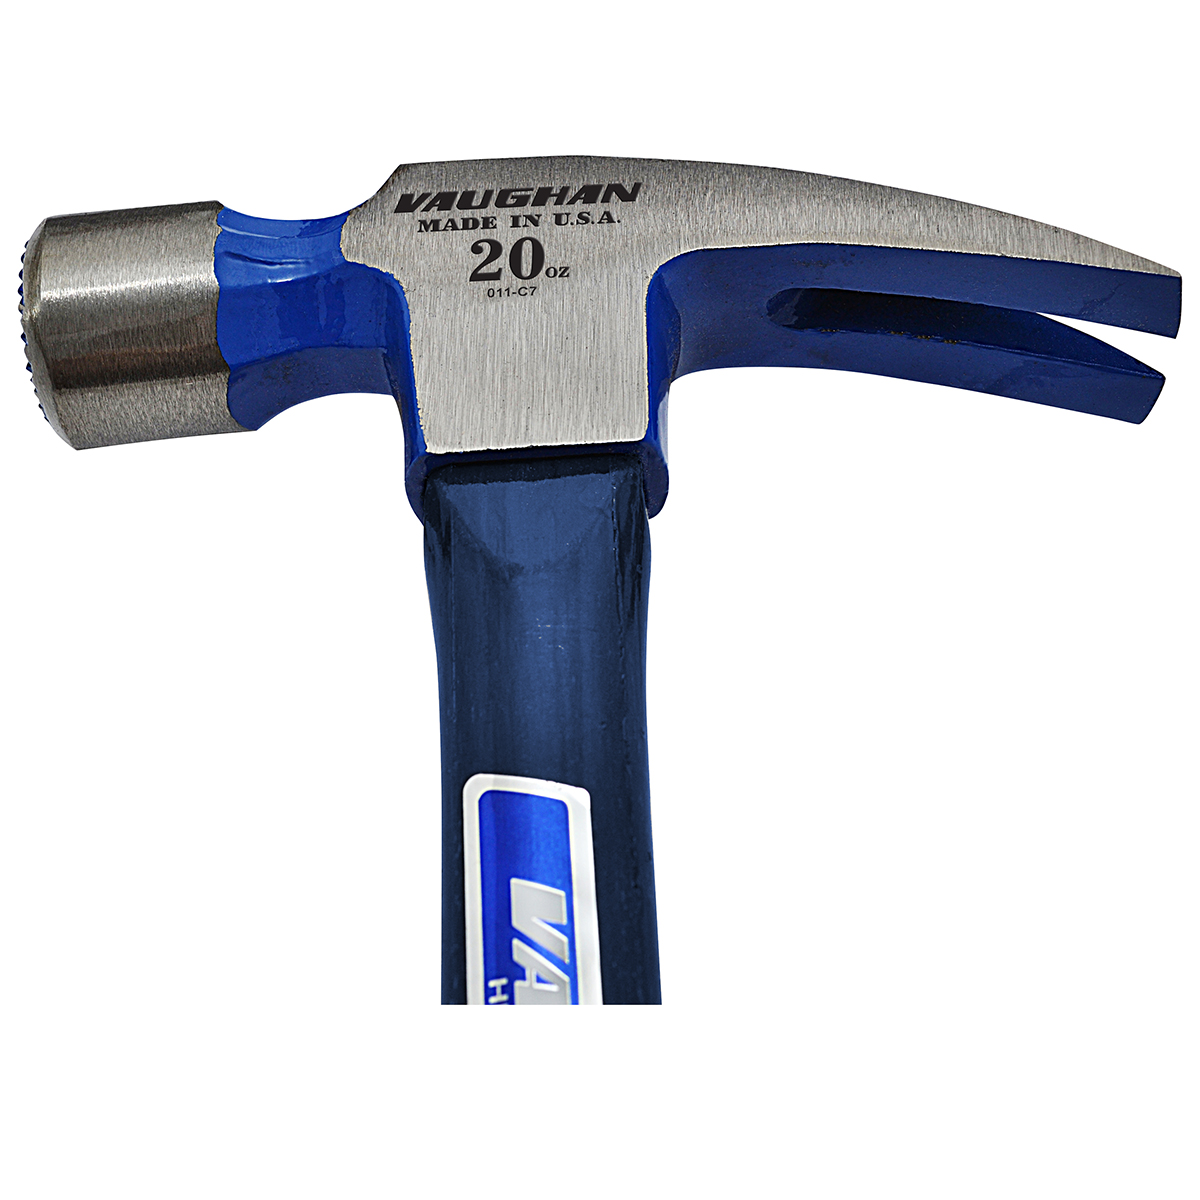 Vaughan Milled face fiberglass rip hammer